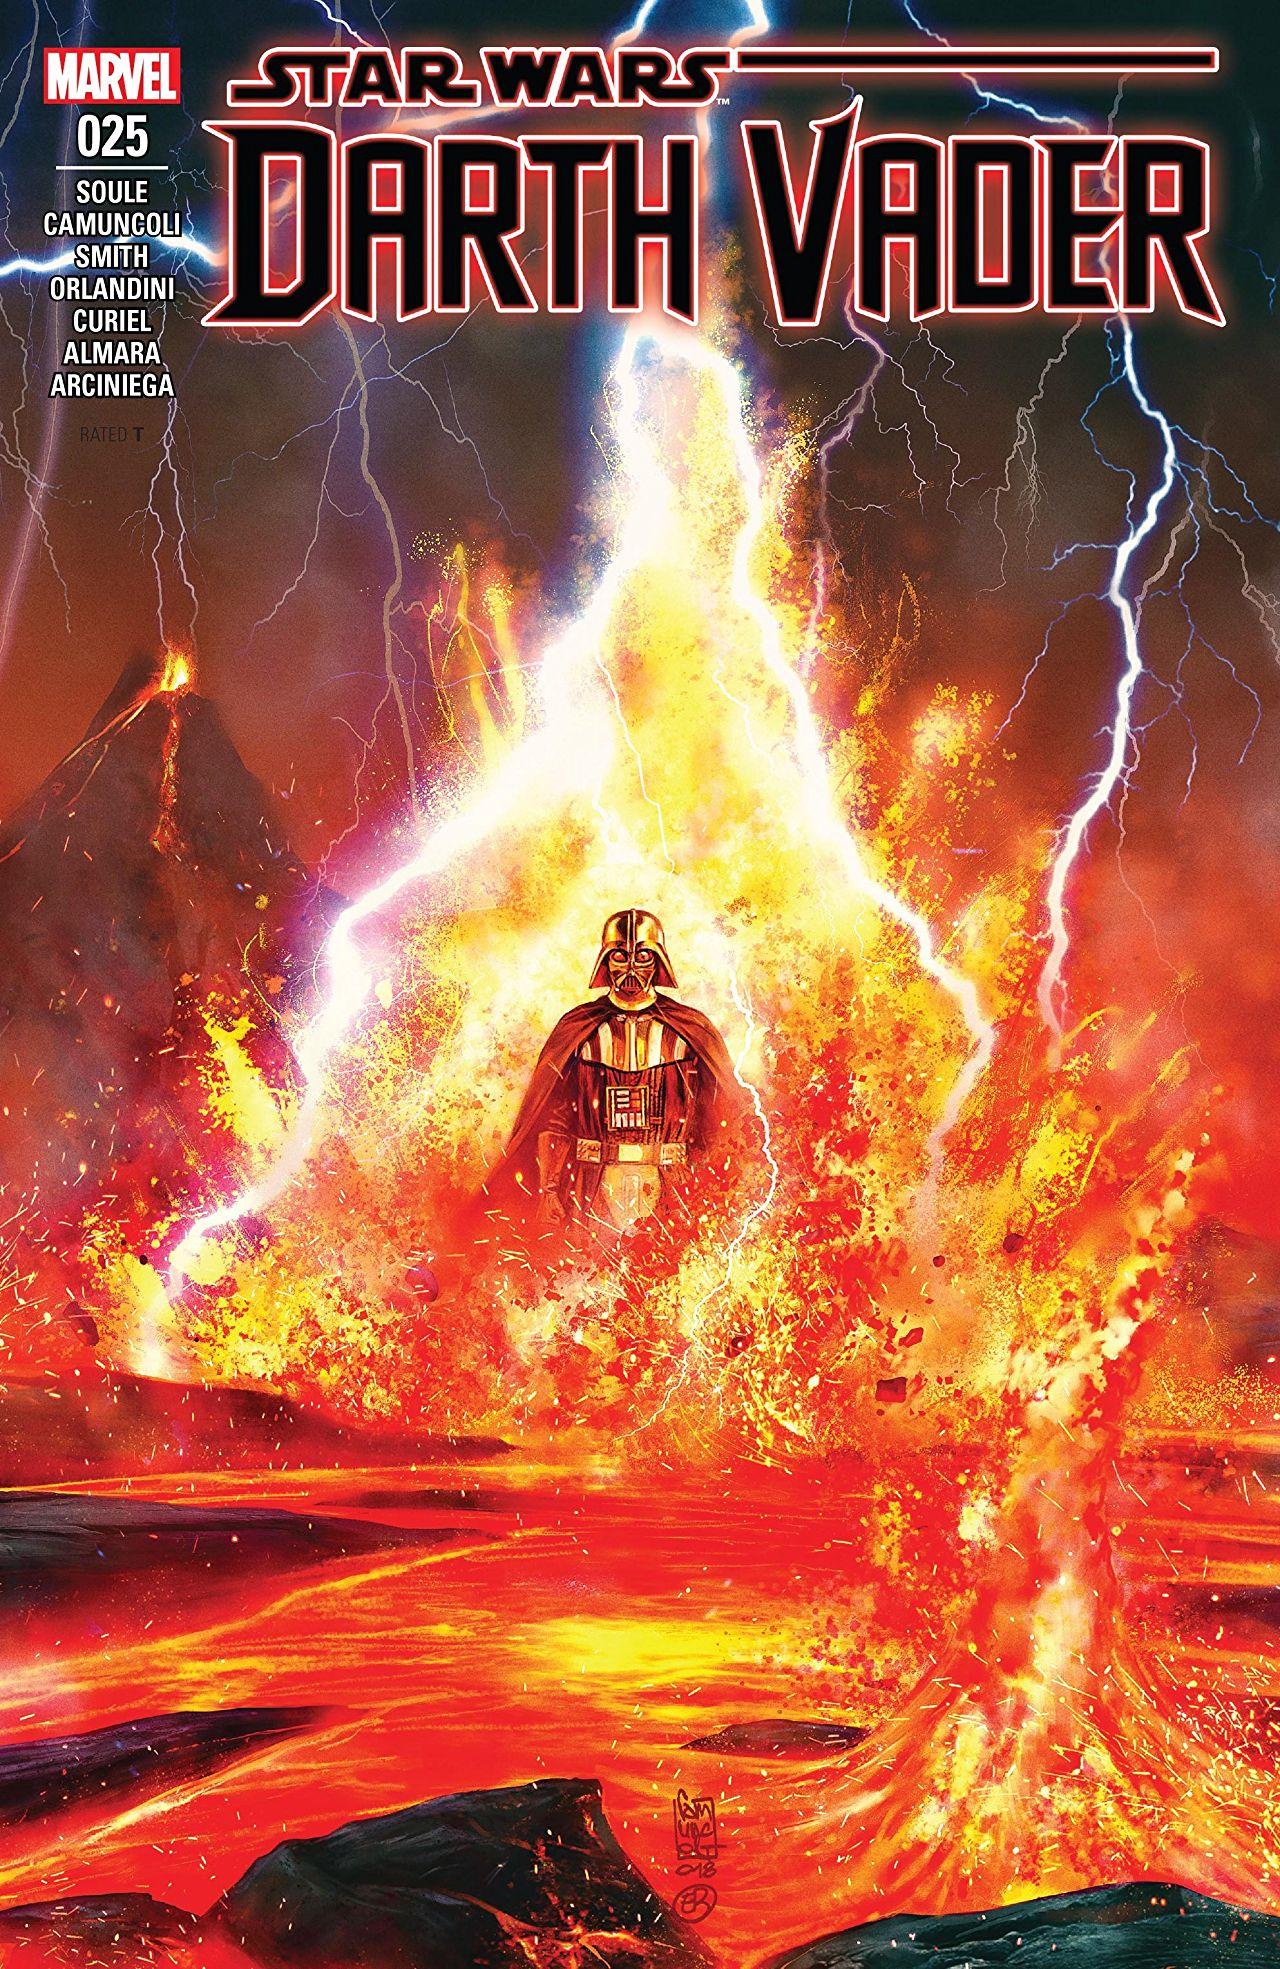 Darth Vader Vol. 2 #25